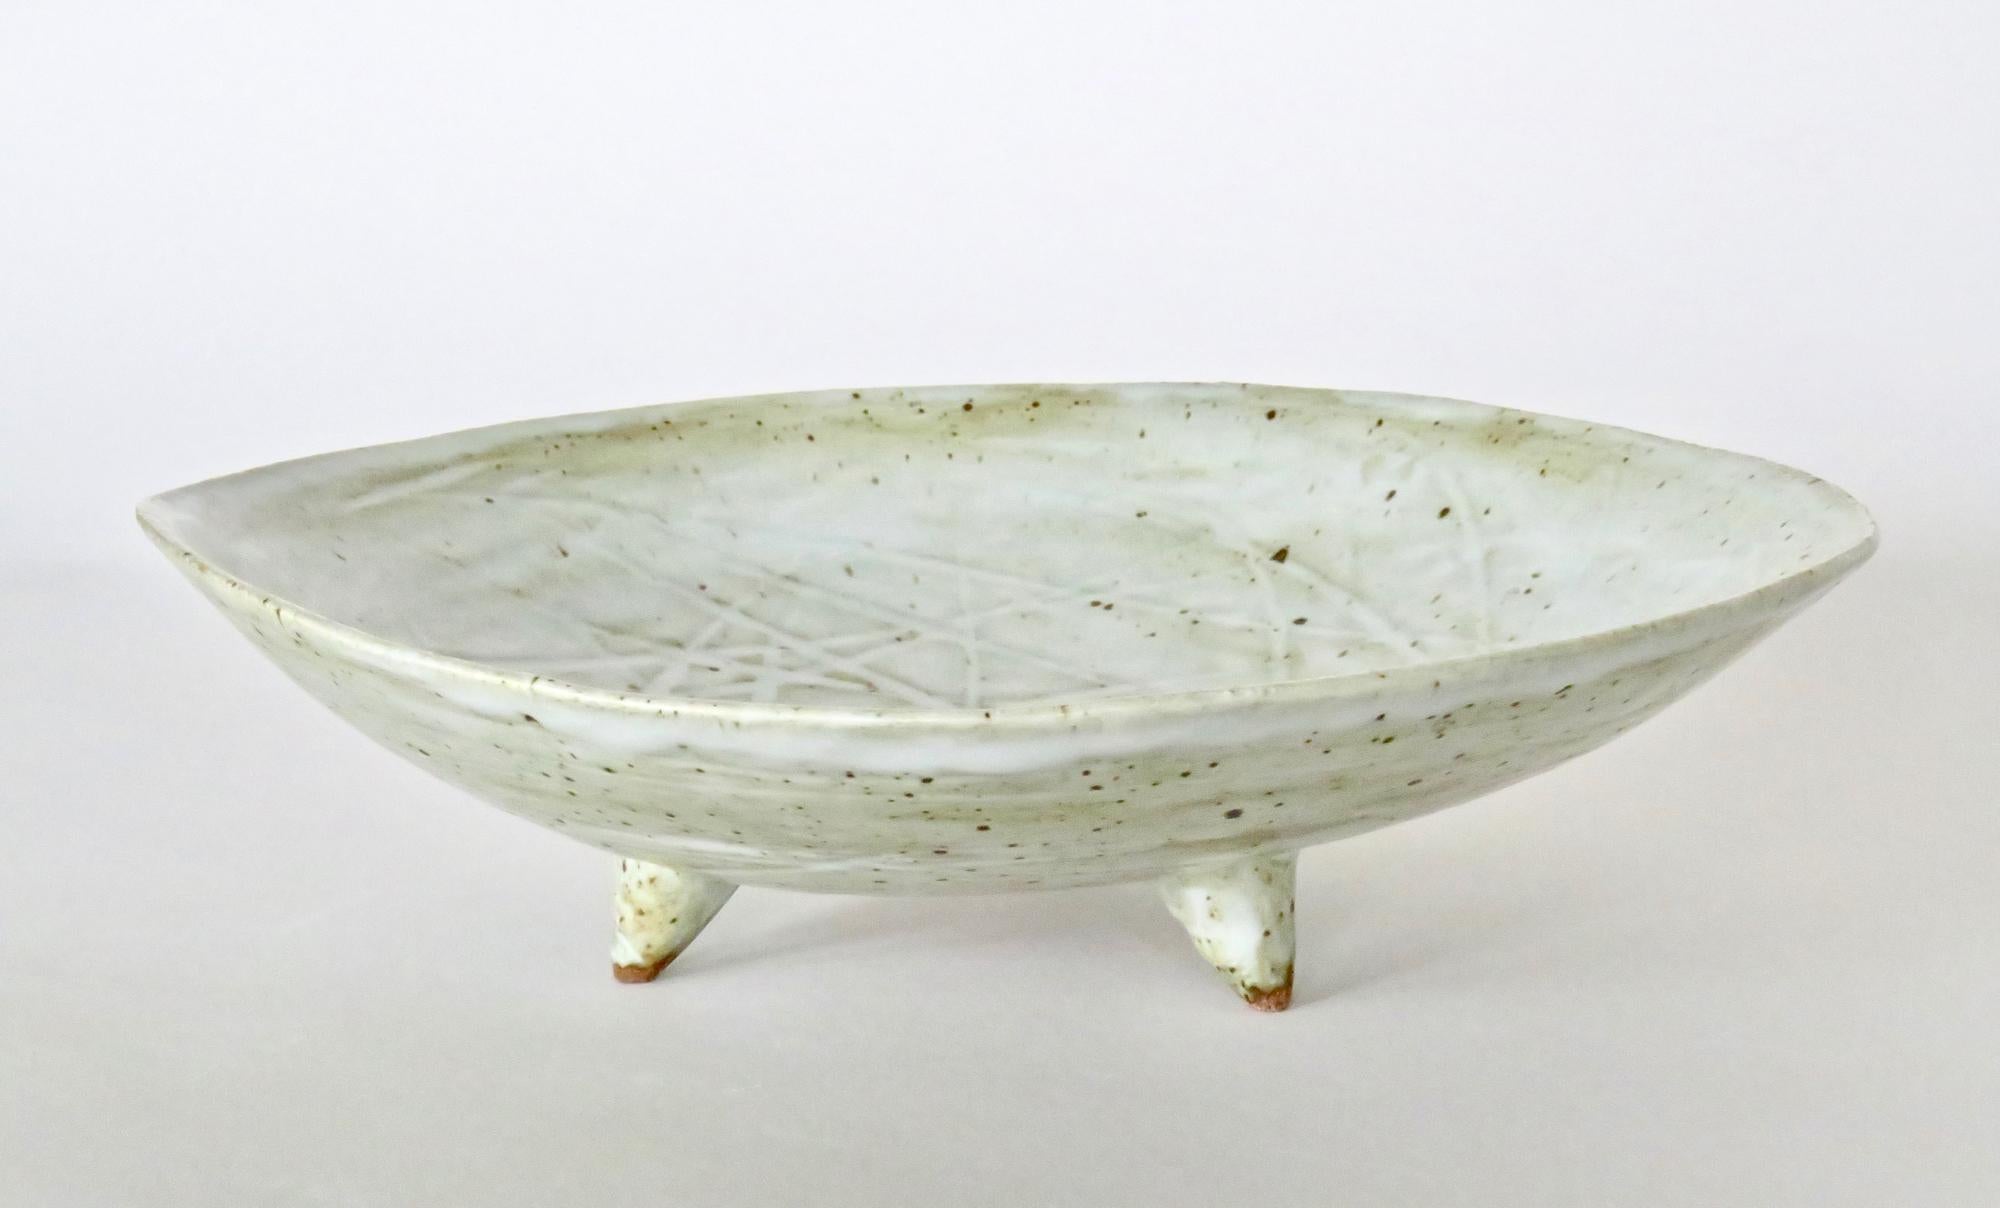 Large Footed Ceramic Serving Bowl, Off-White Speckled Glaze, Hand Built 1